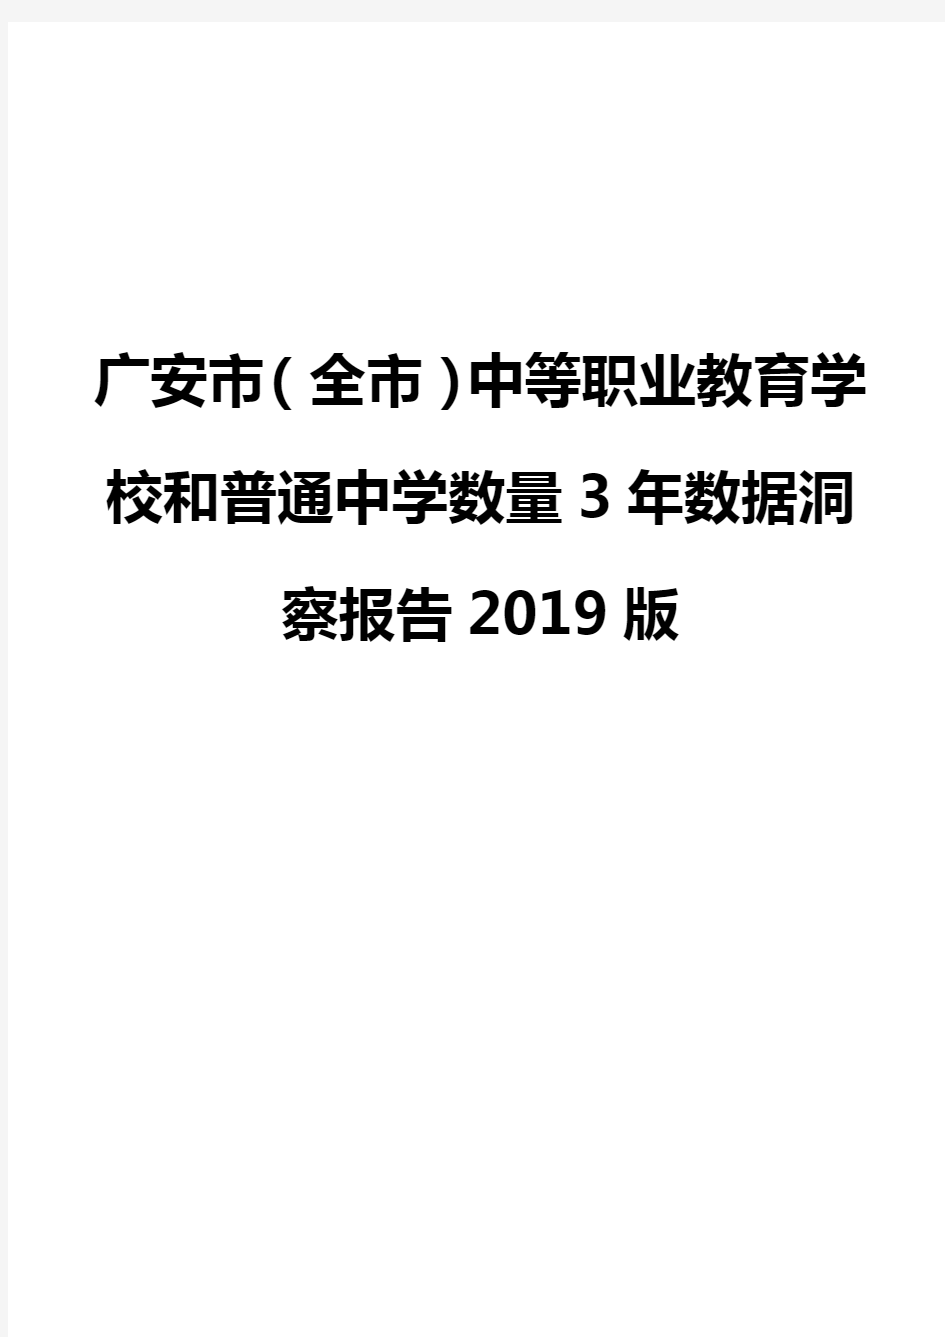 广安市(全市)中等职业教育学校和普通中学数量3年数据洞察报告2019版